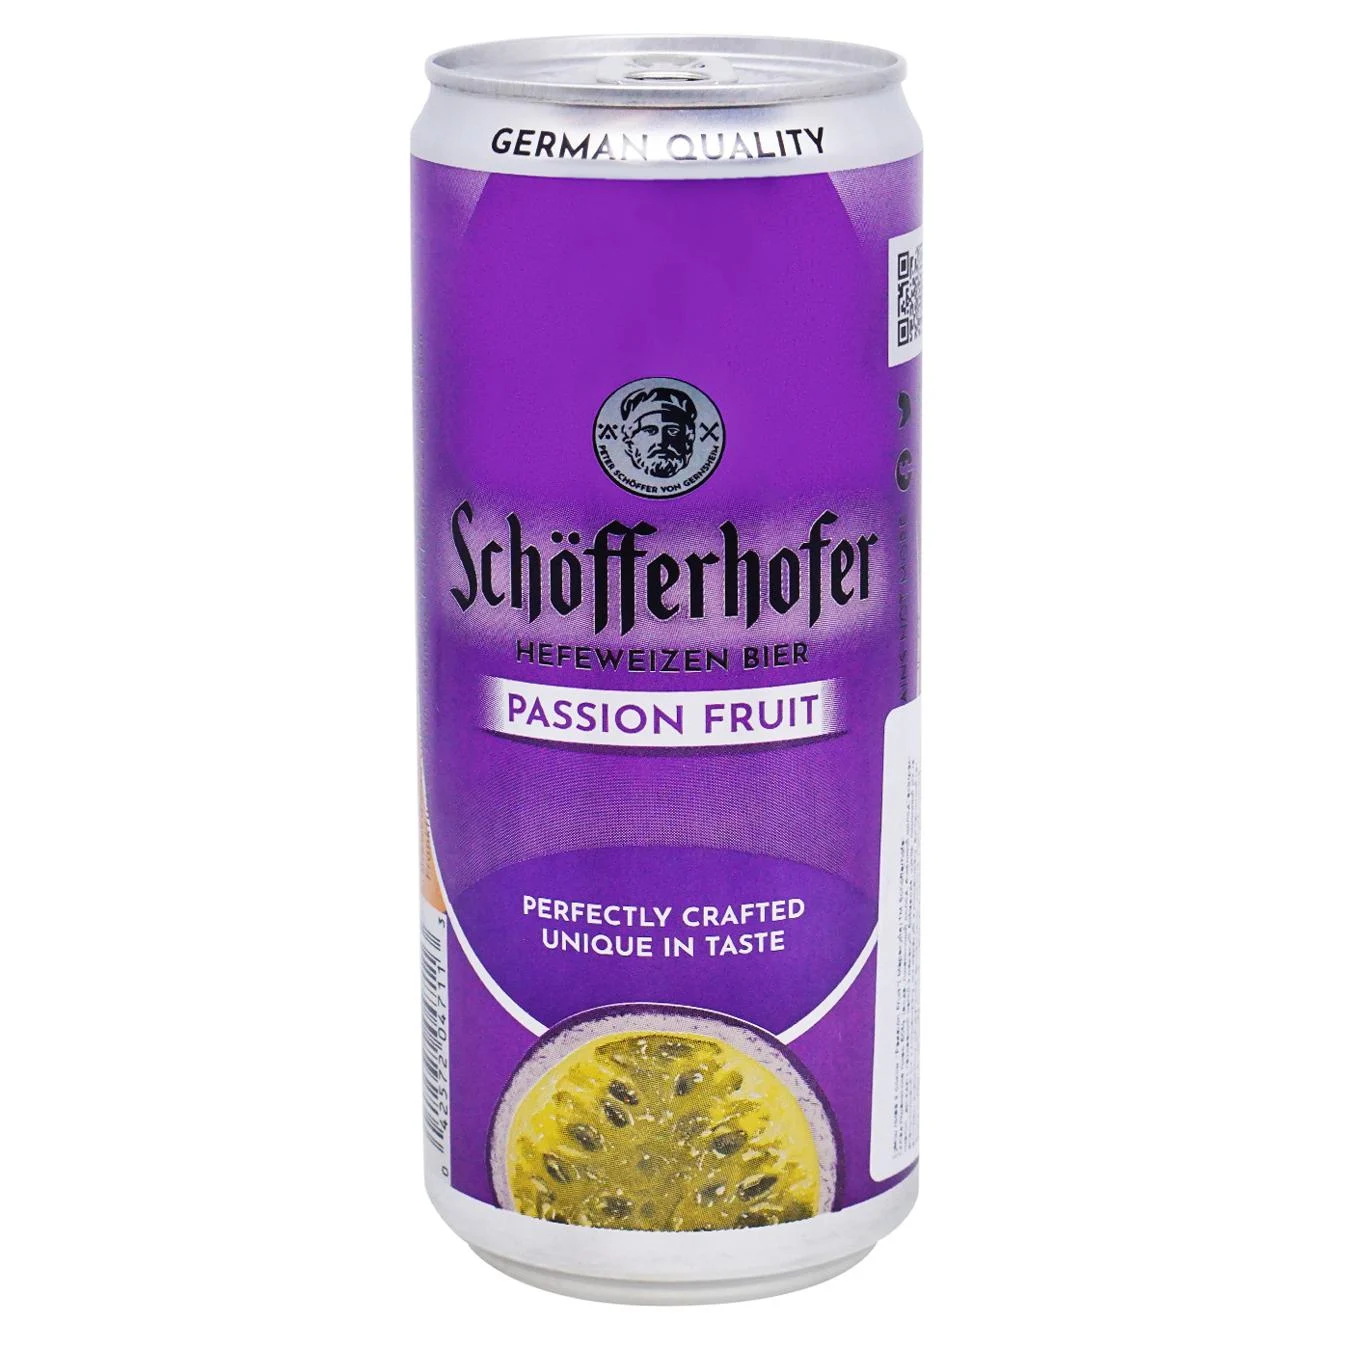 Пиво светлое Schofferhofer со вкусом маракуйя 2,5% 0,33л железная банка